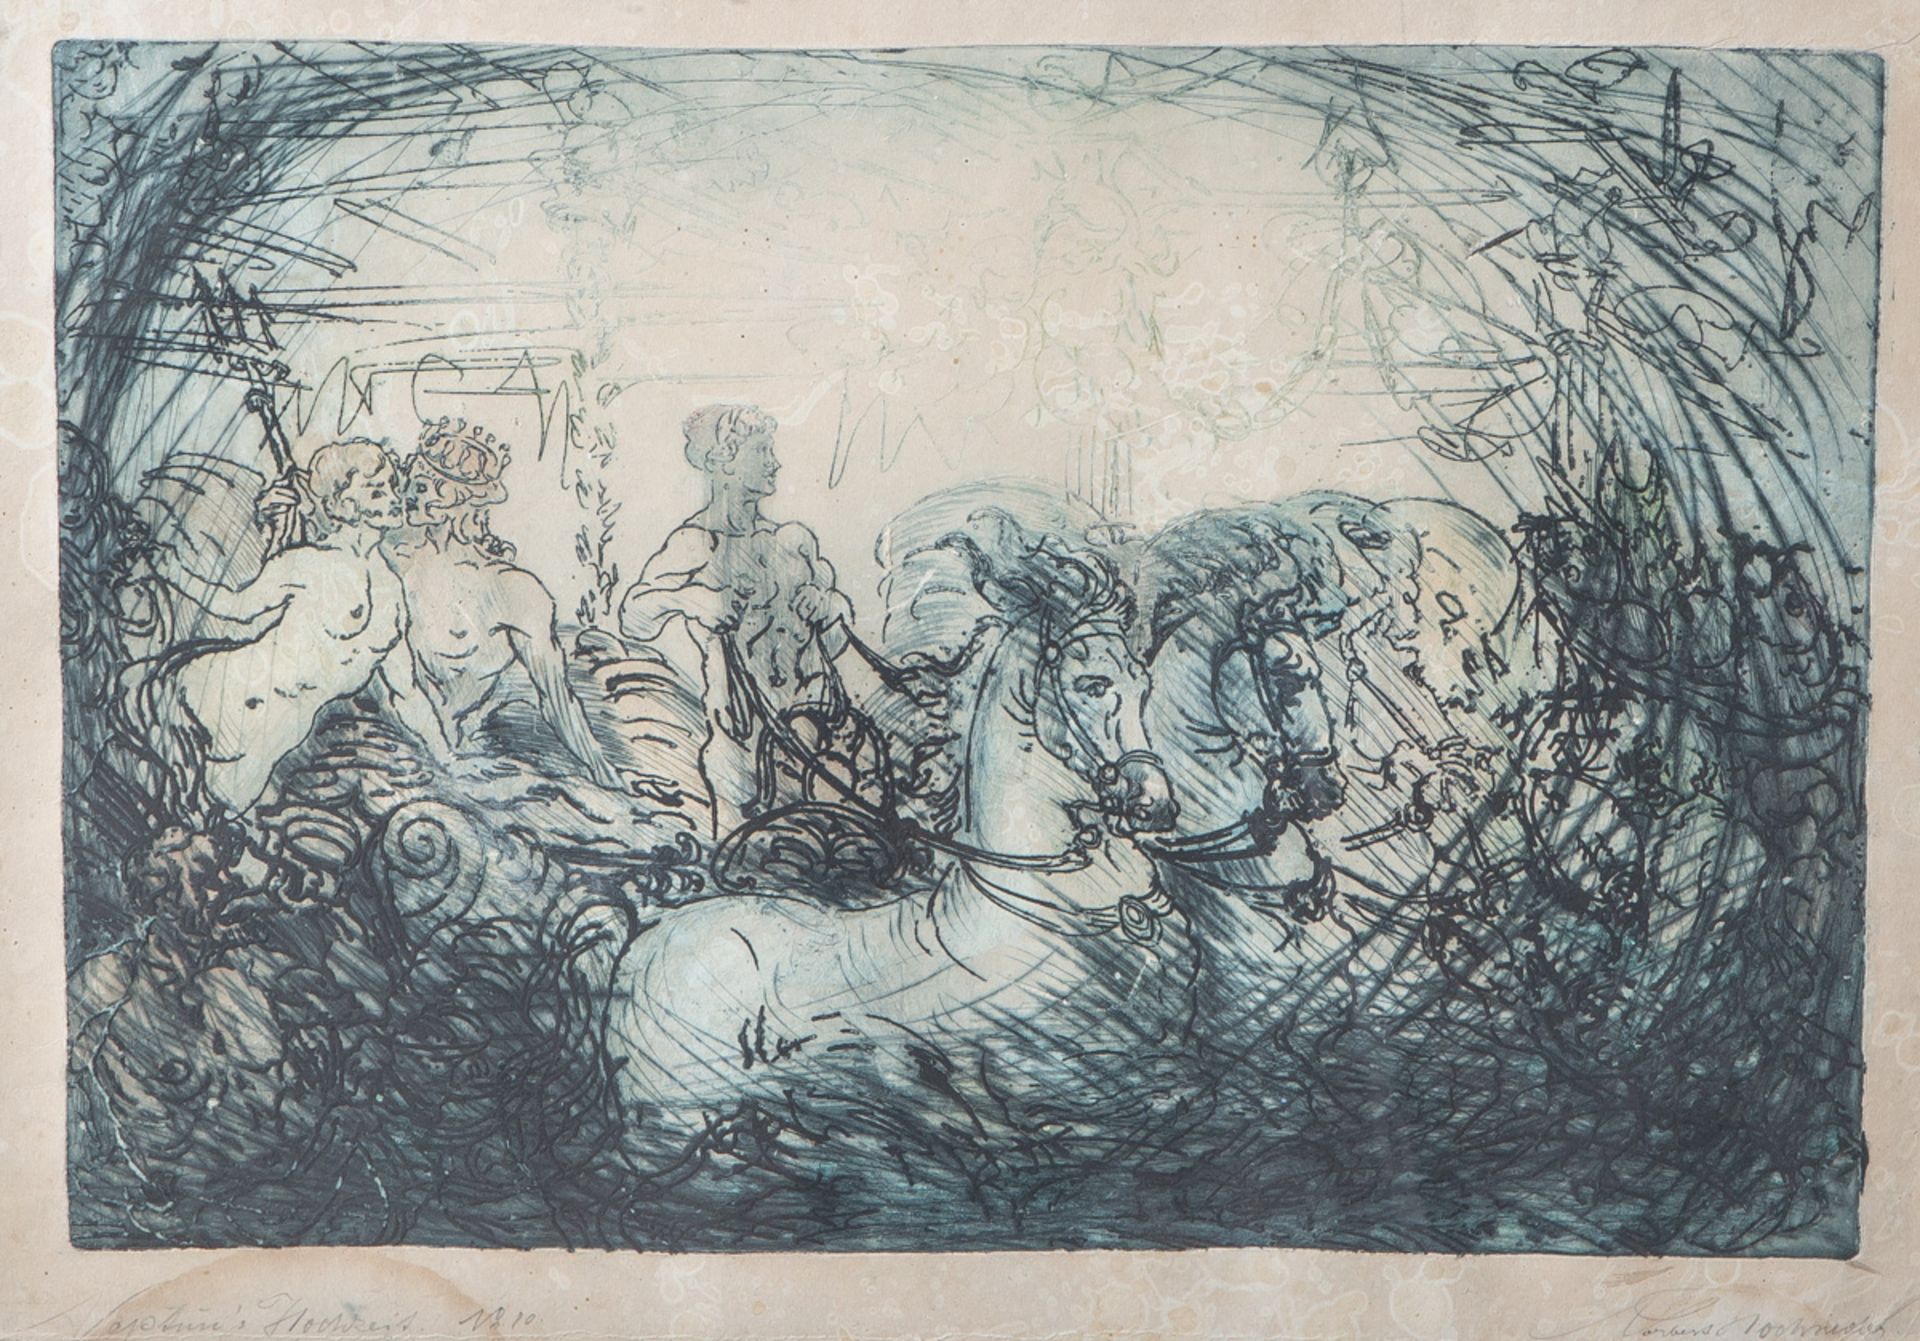 Hochsieder, Norbert (1879 in Marienbad-1958 in Ansbach), "Neptun's Hochzeit",Aquarell/Tinte/